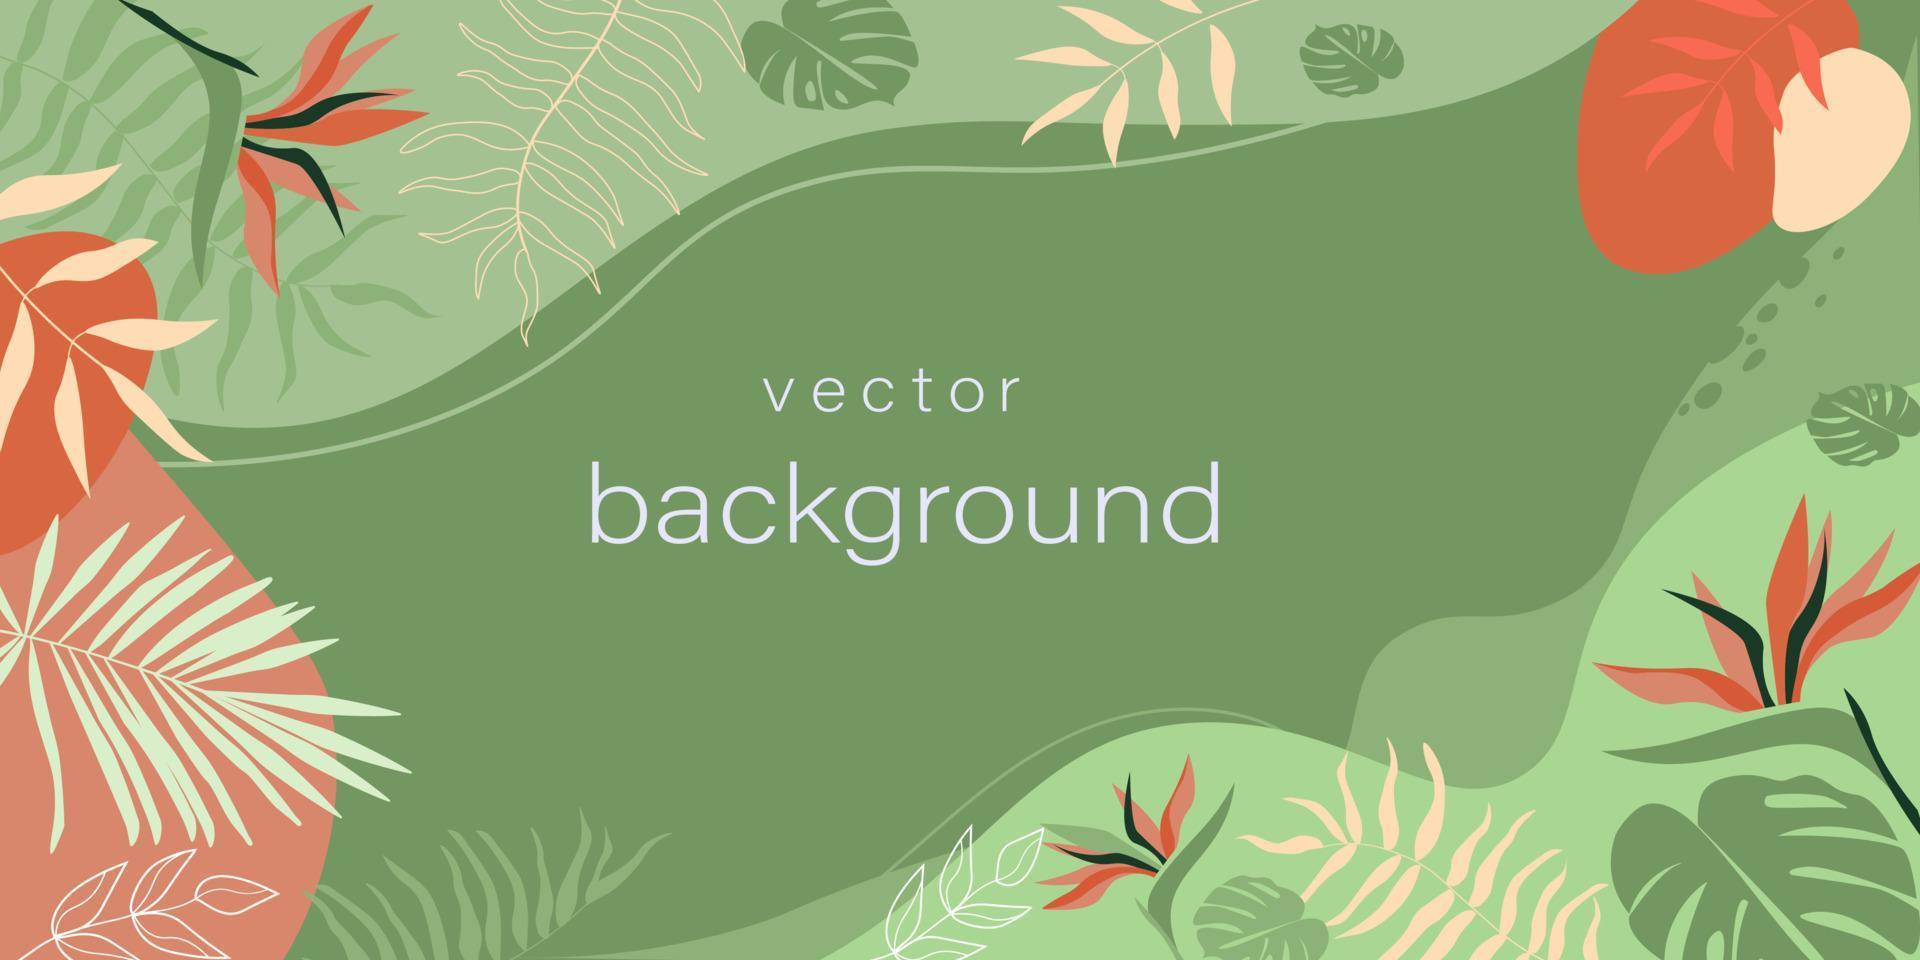 horizontale vectorontwerpsjablonen in een eenvoudige eigentijdse stijl met tropische zomerbladeren, abstracte vormen, met ruimte voor het kopiëren van tekst, bureaubladachtergronden op sociale media. vector